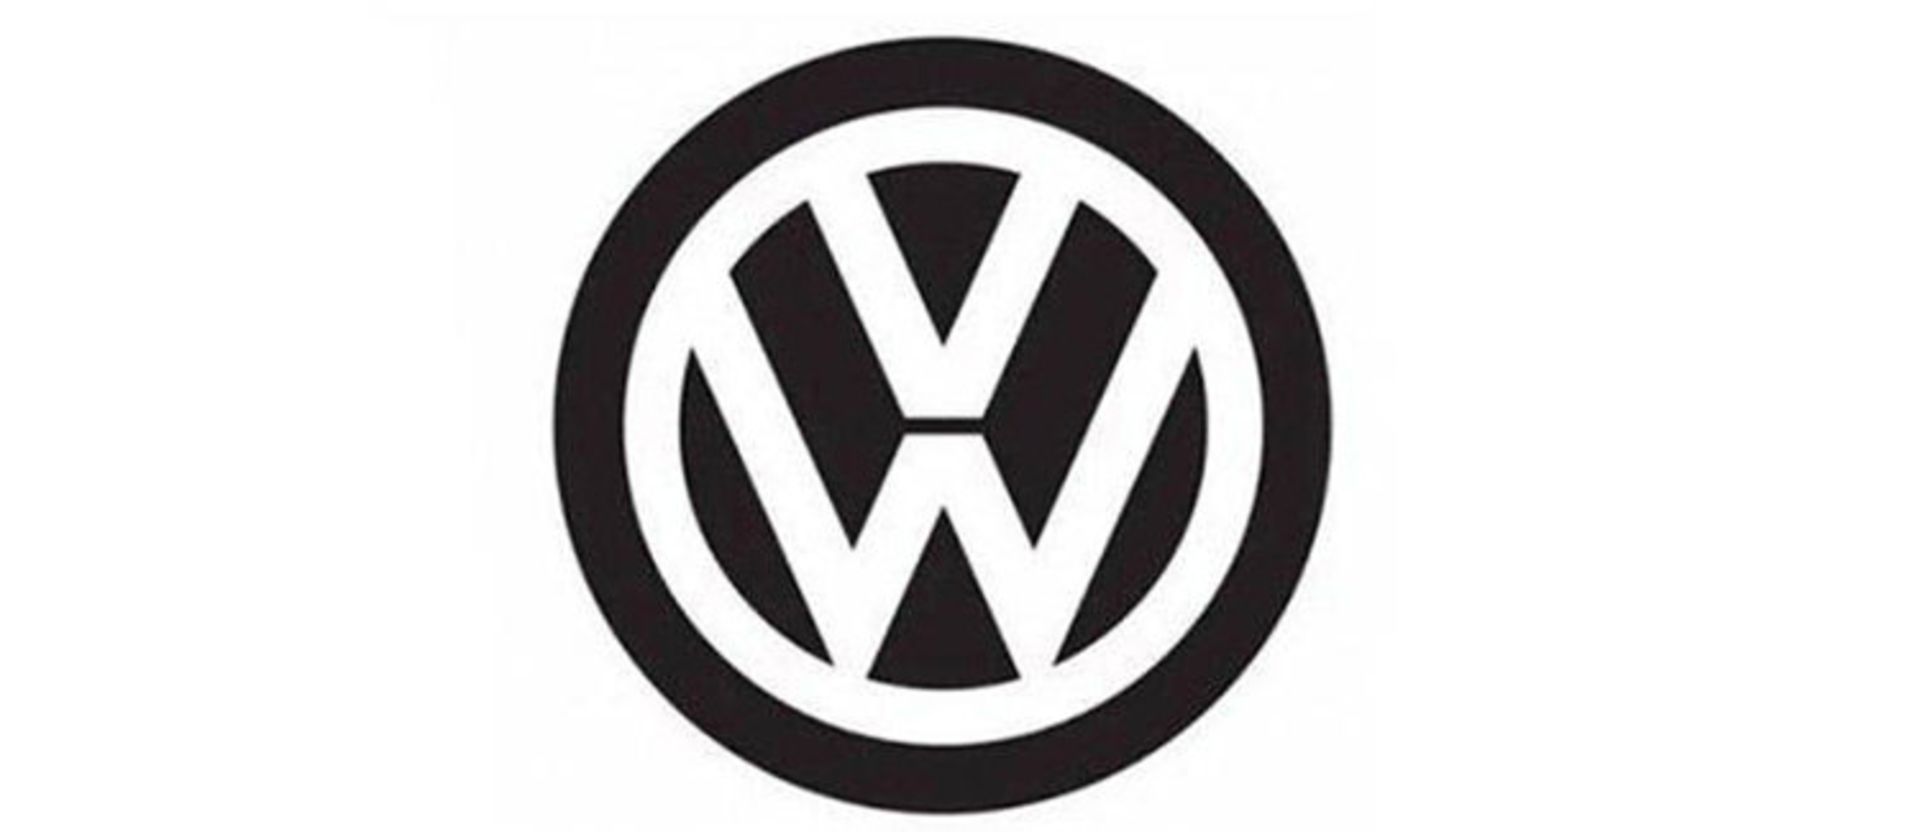 لوگو فولکس واگن / Volkswagen Logo